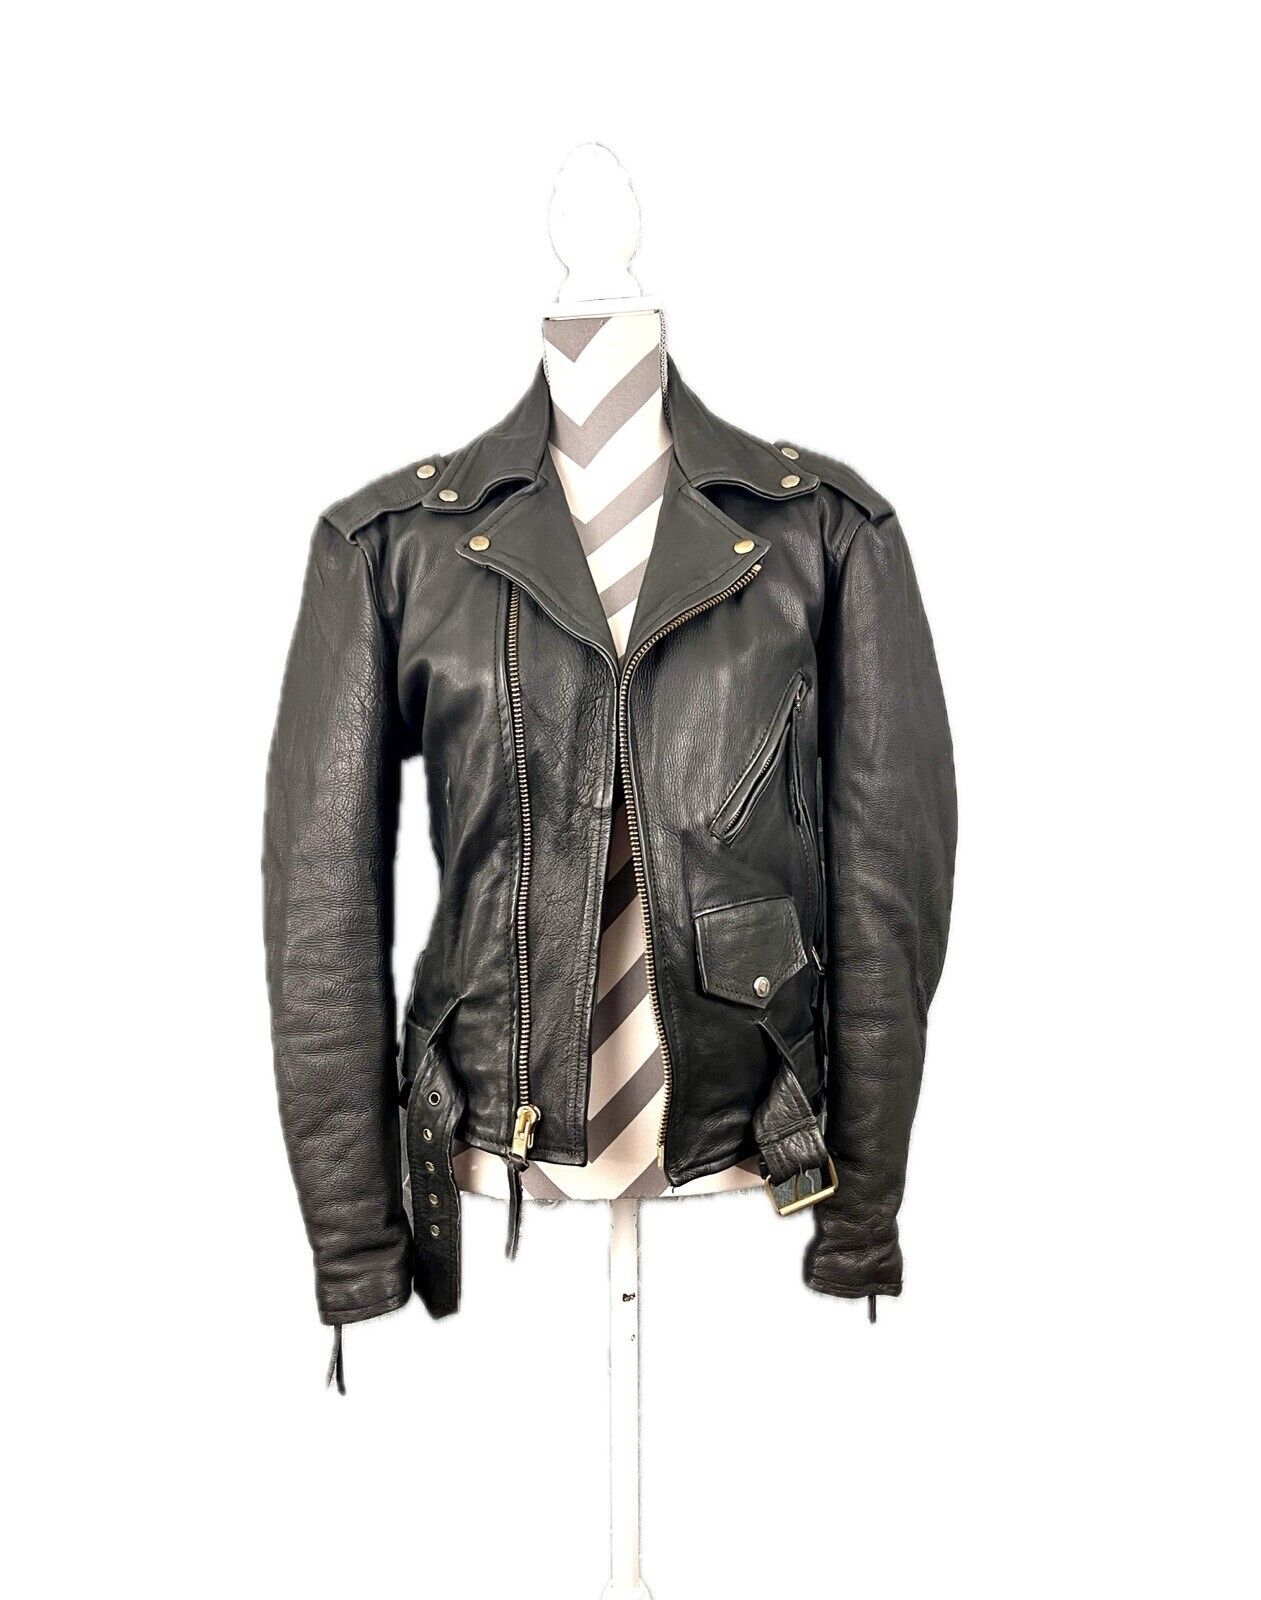 Vintage UNIK Unisex Black Leather Motorcycle Jacket - Size 36